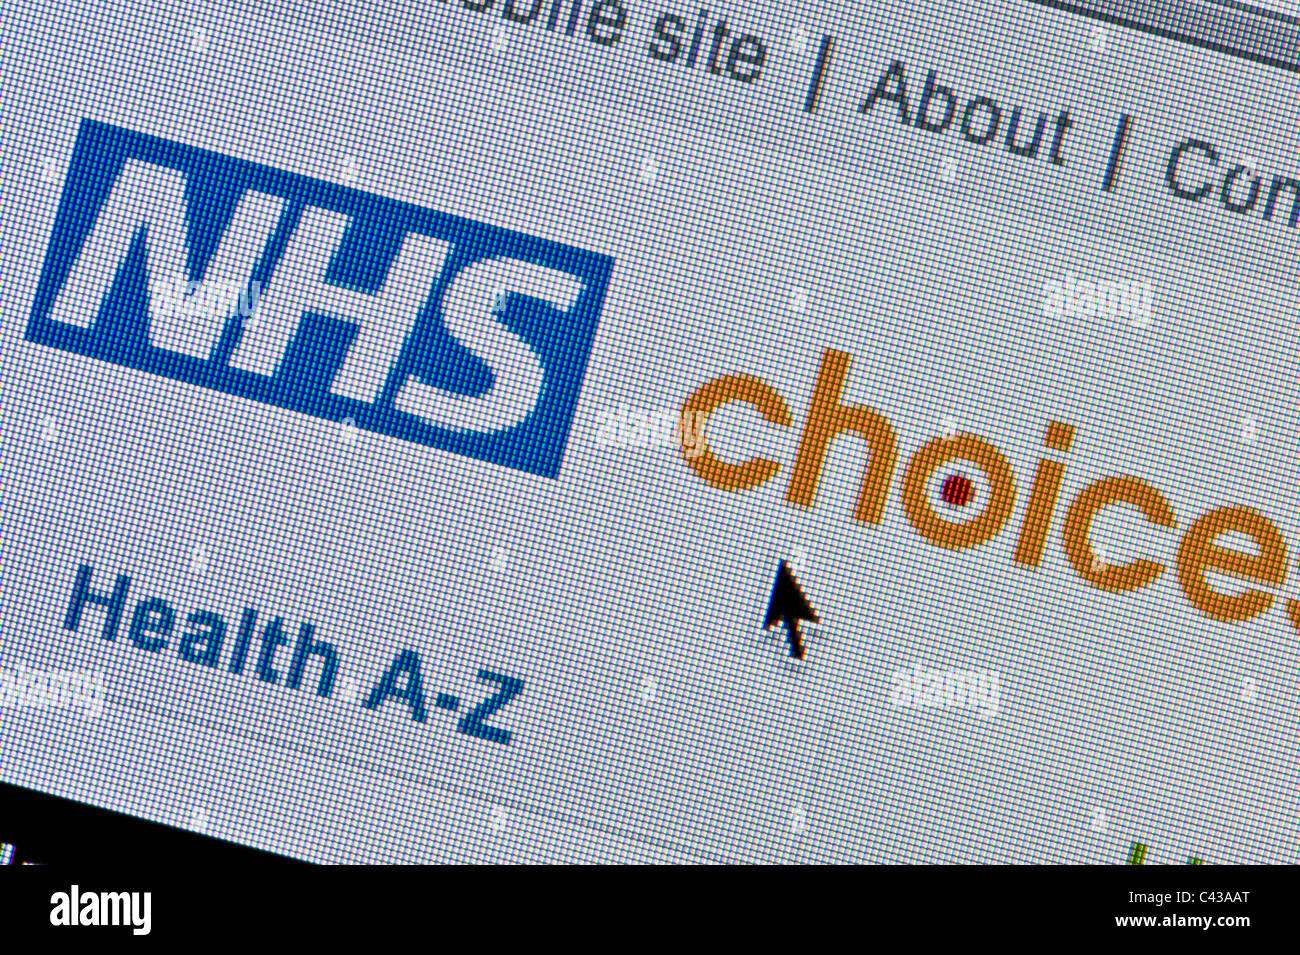 Nahaufnahme des NHS Auswahlmöglichkeiten Logos, wie auf ihrer Website zu sehen. (Nur zur redaktionellen Verwendung: print, TV, e-Book und redaktionelle Webseite). Stockfoto